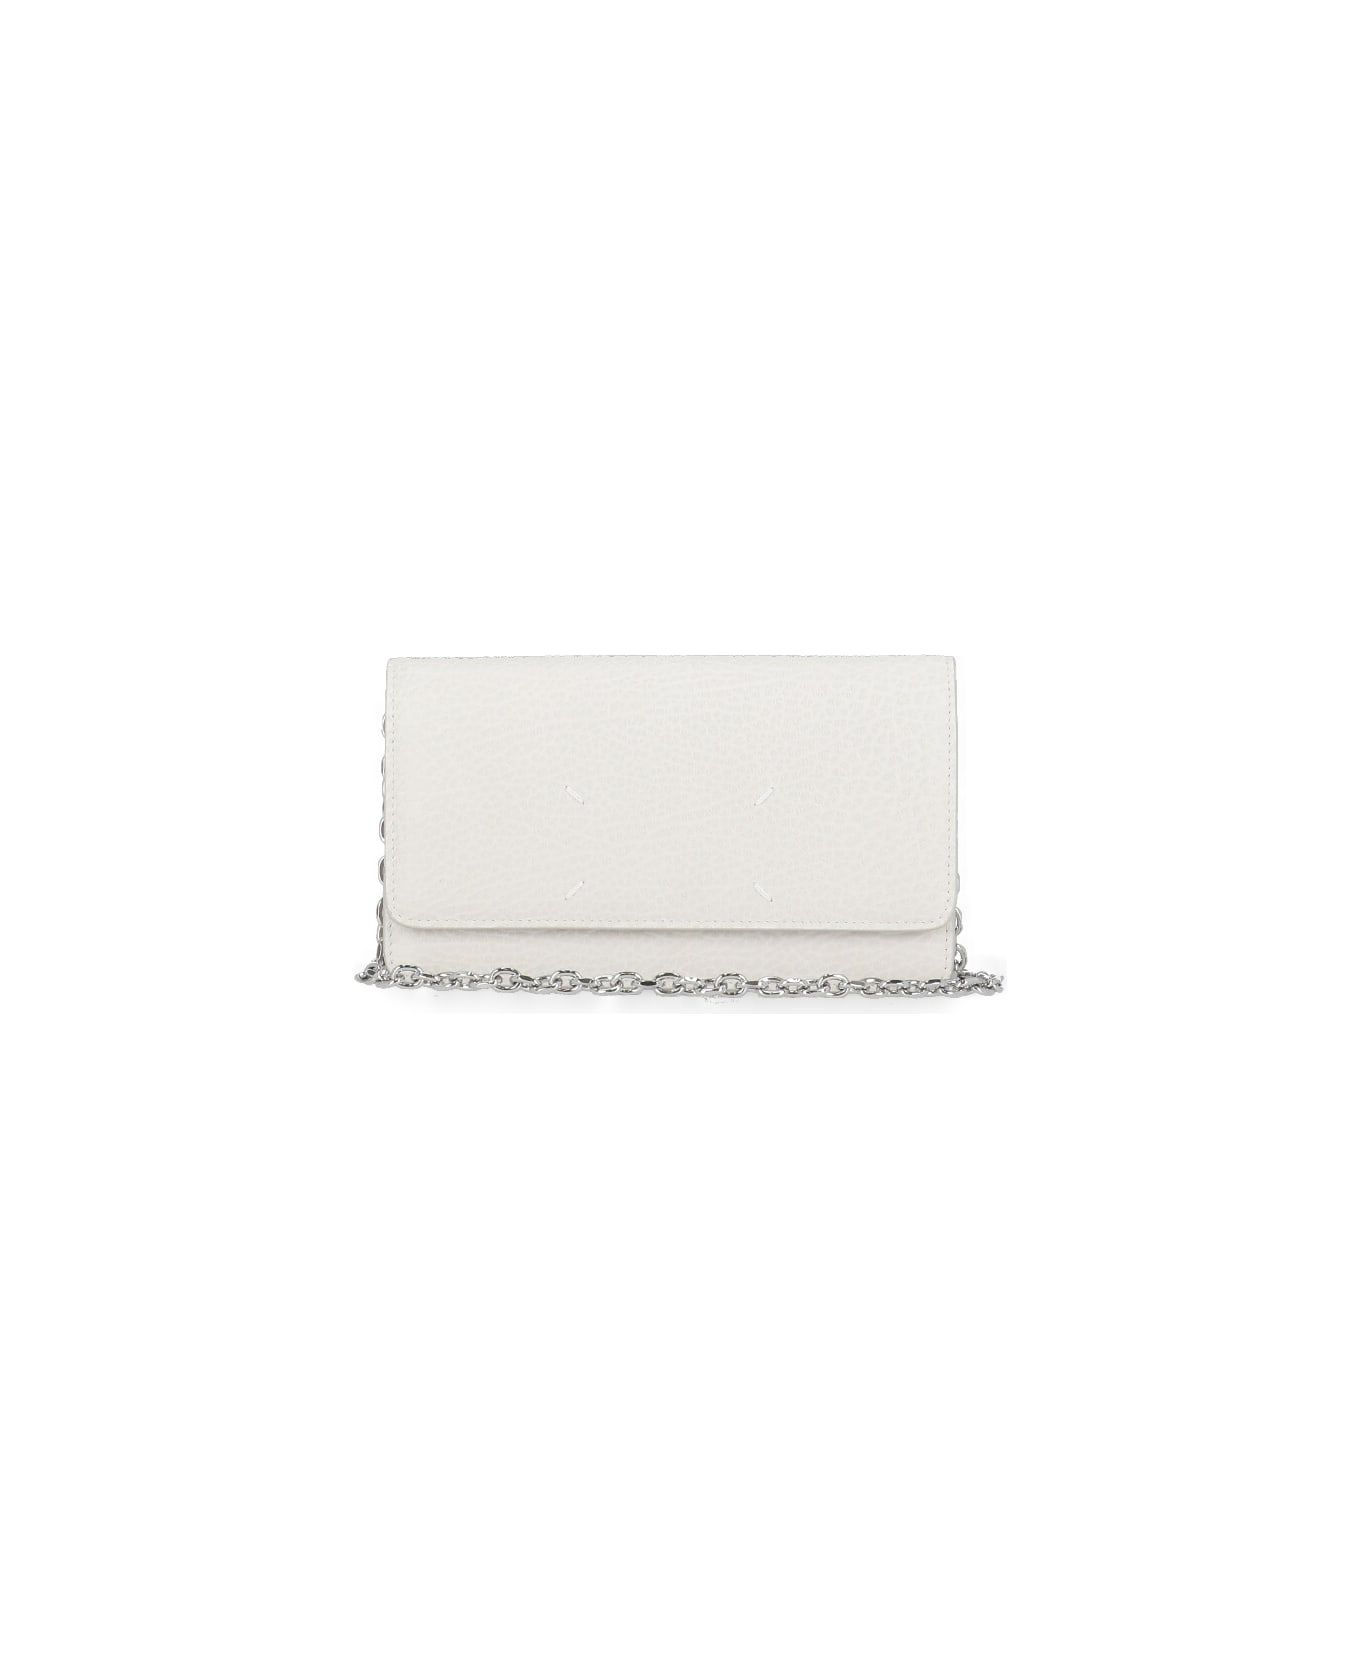 Maison Margiela Four Stitches Wallet - White 財布